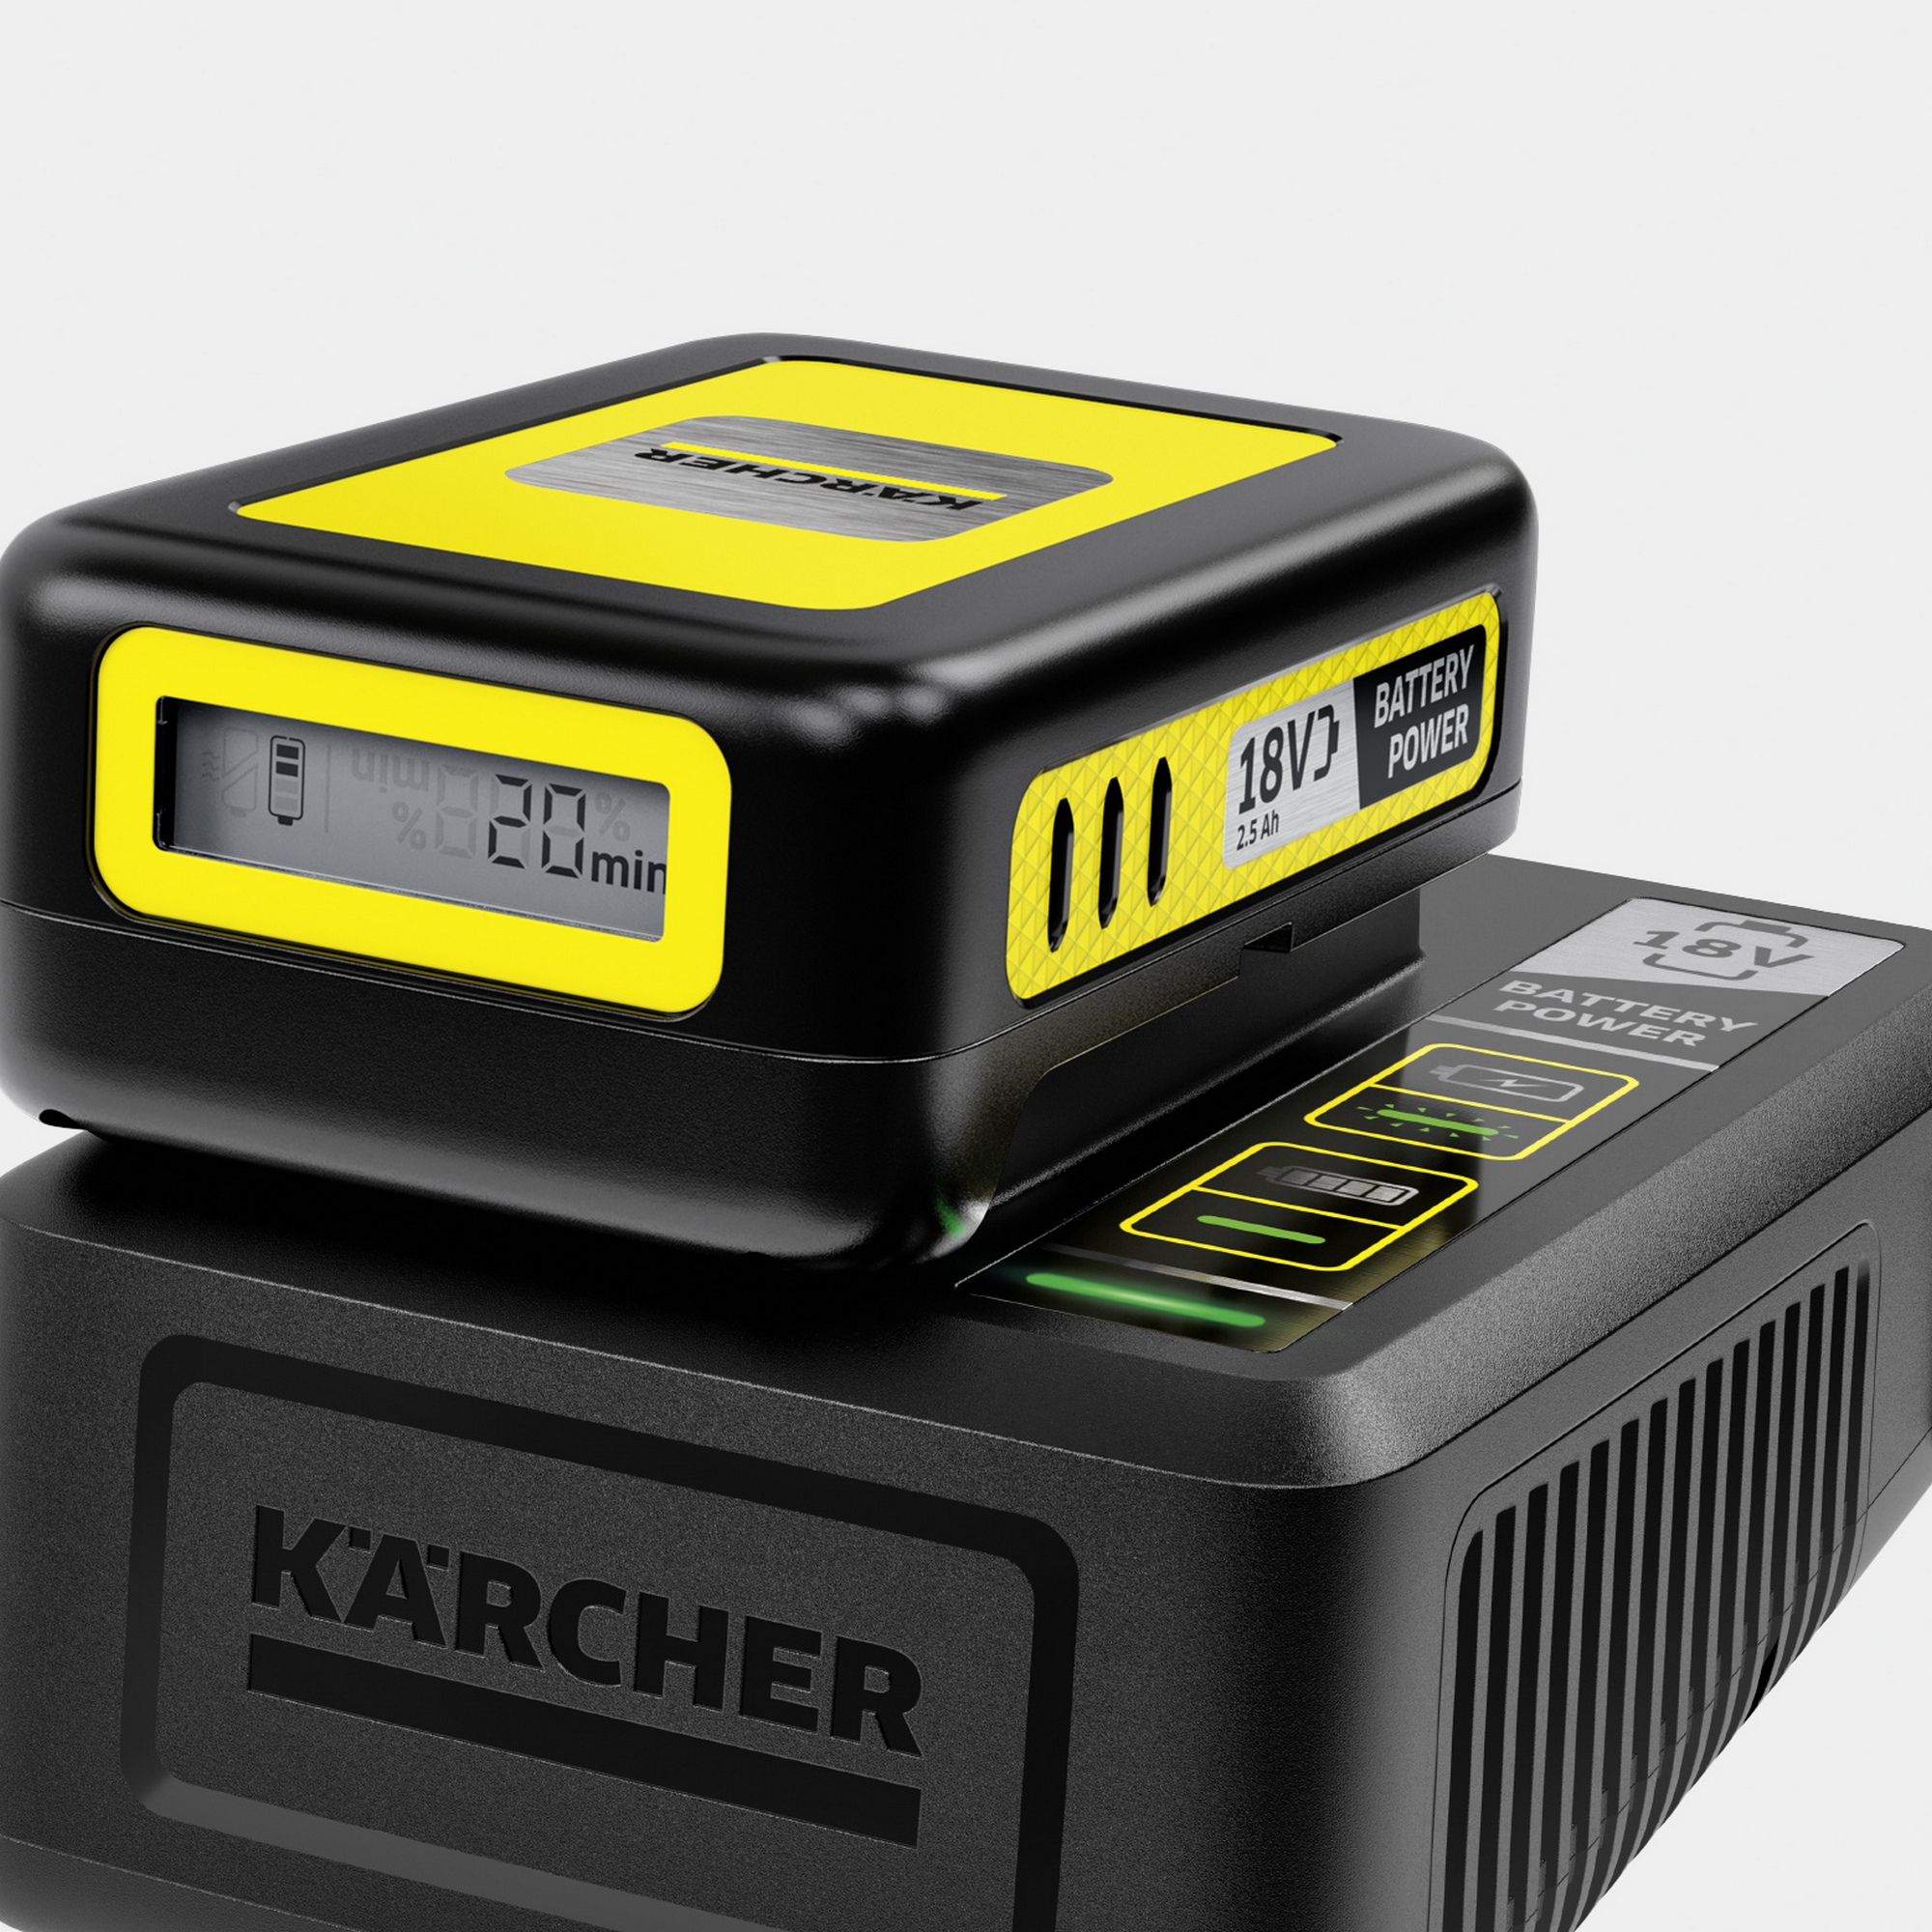 Starter-Kit 'Battery Power 18/25' Wechselakku mit Schnellladegerät, 18 V 2,5  Ah